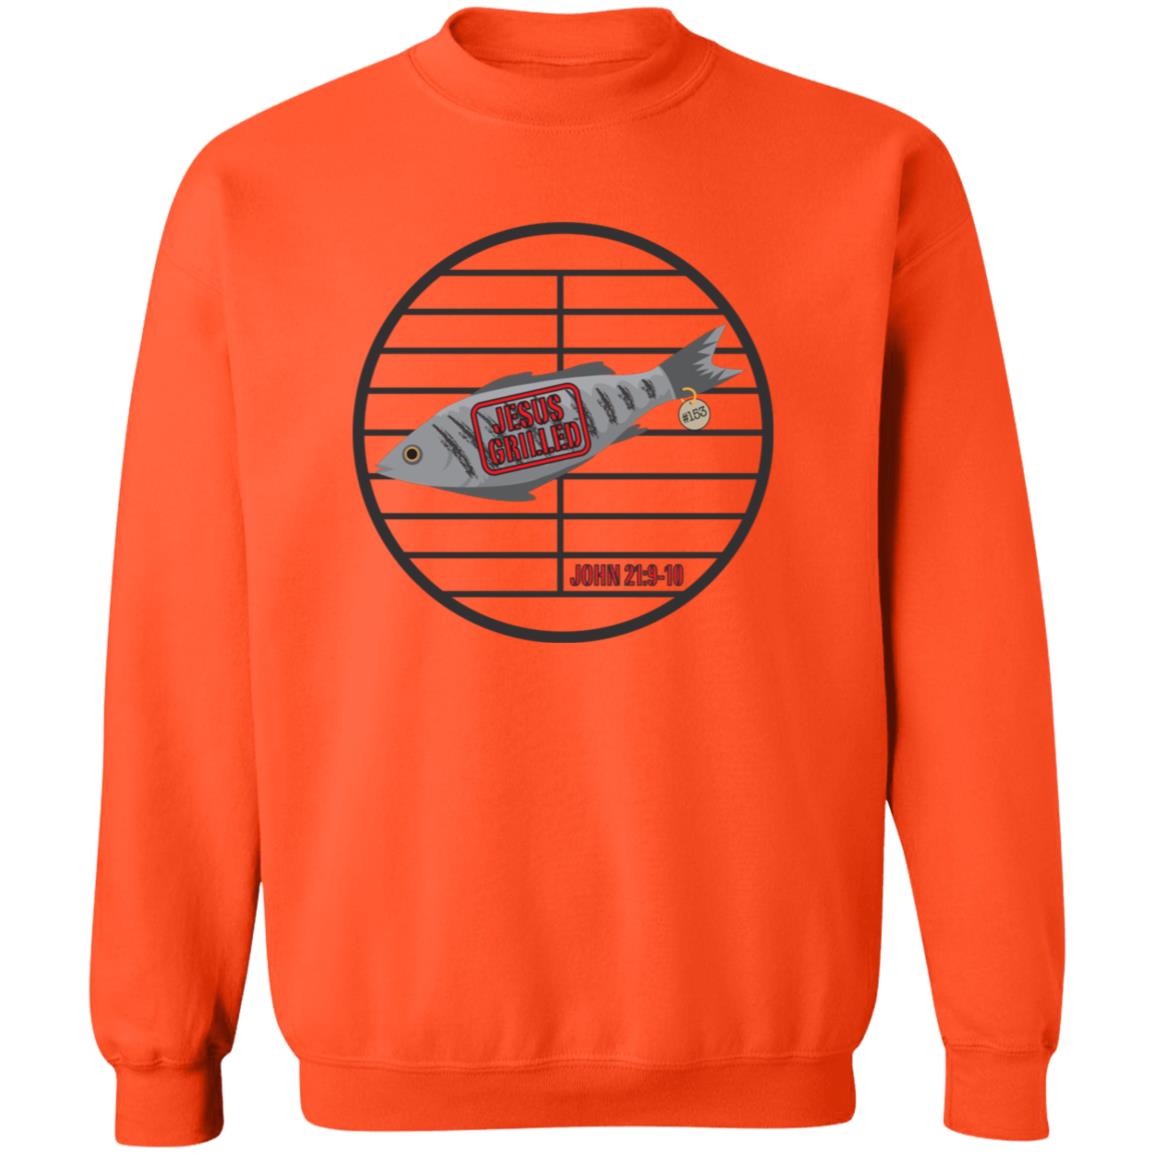 153 Fish Men/Women Unisex Crewneck Sweatshirt